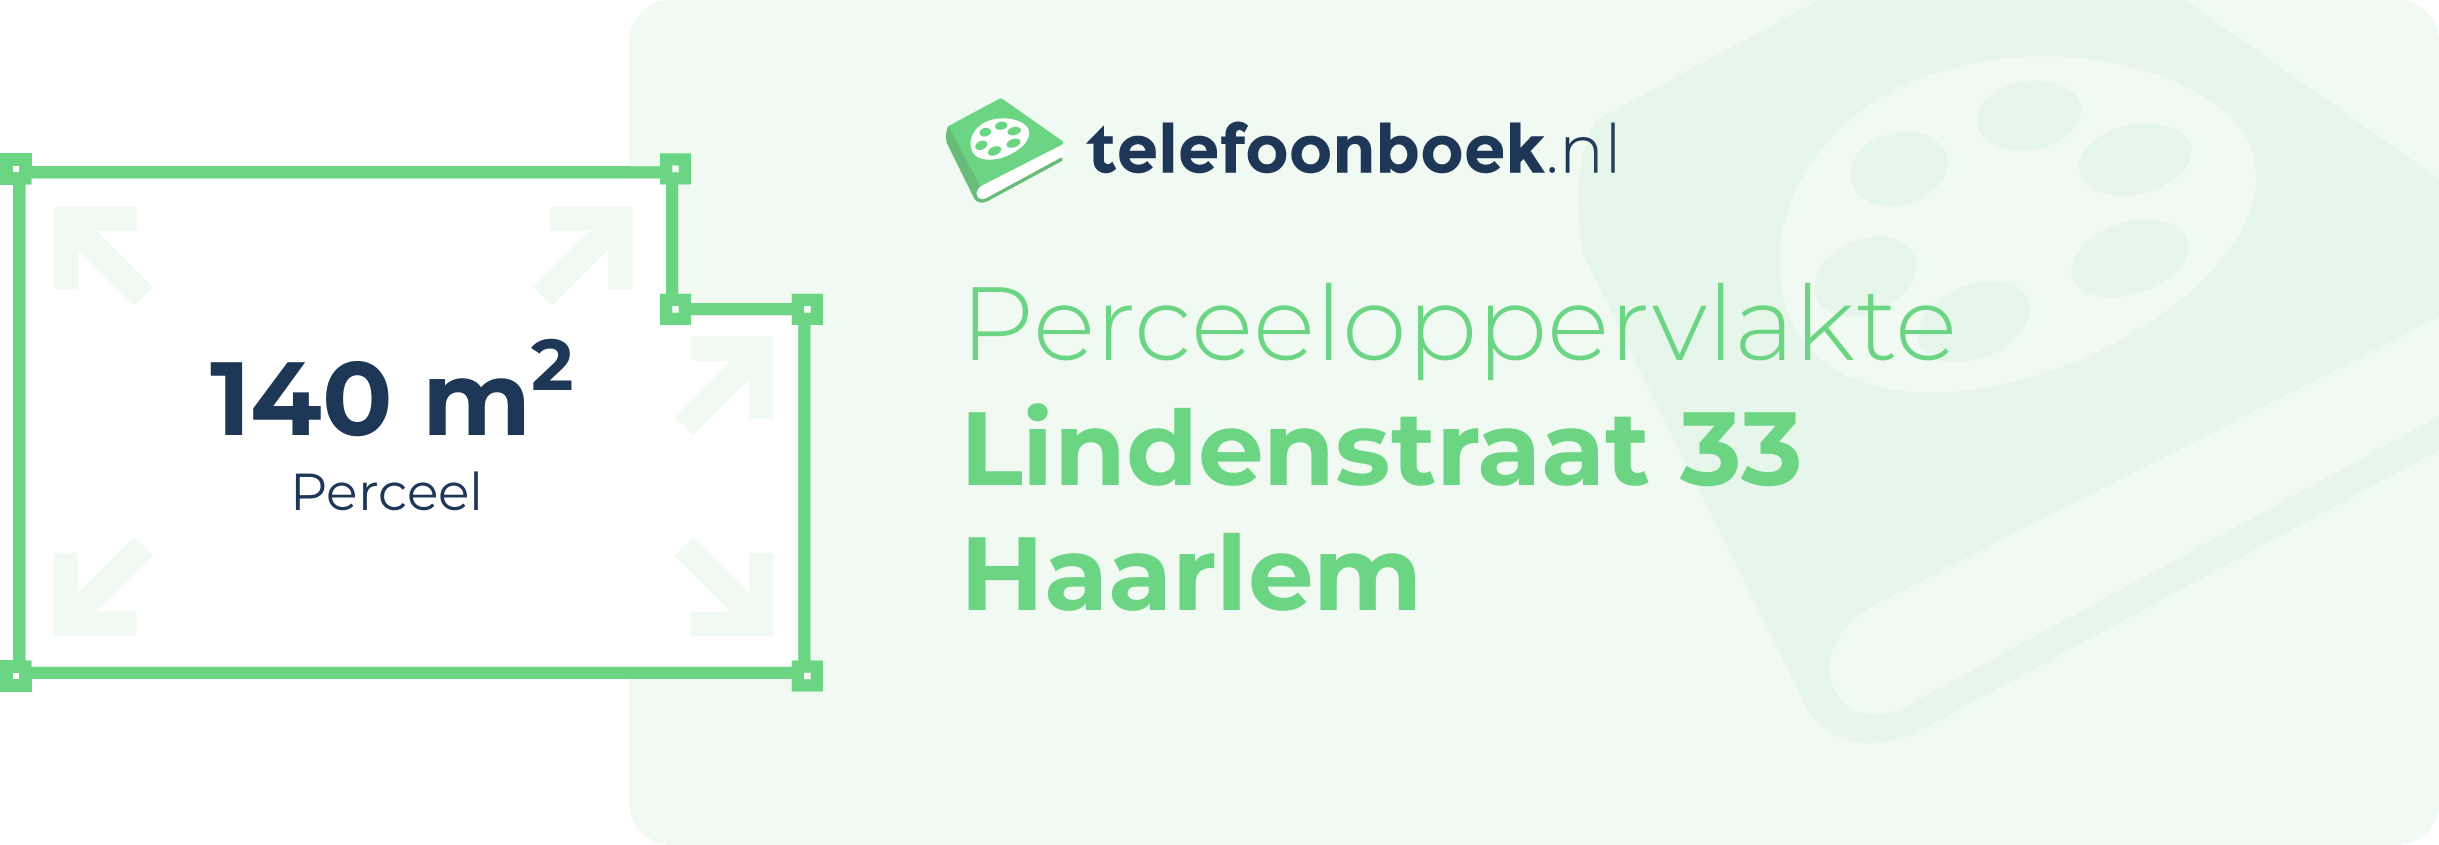 Perceeloppervlakte Lindenstraat 33 Haarlem